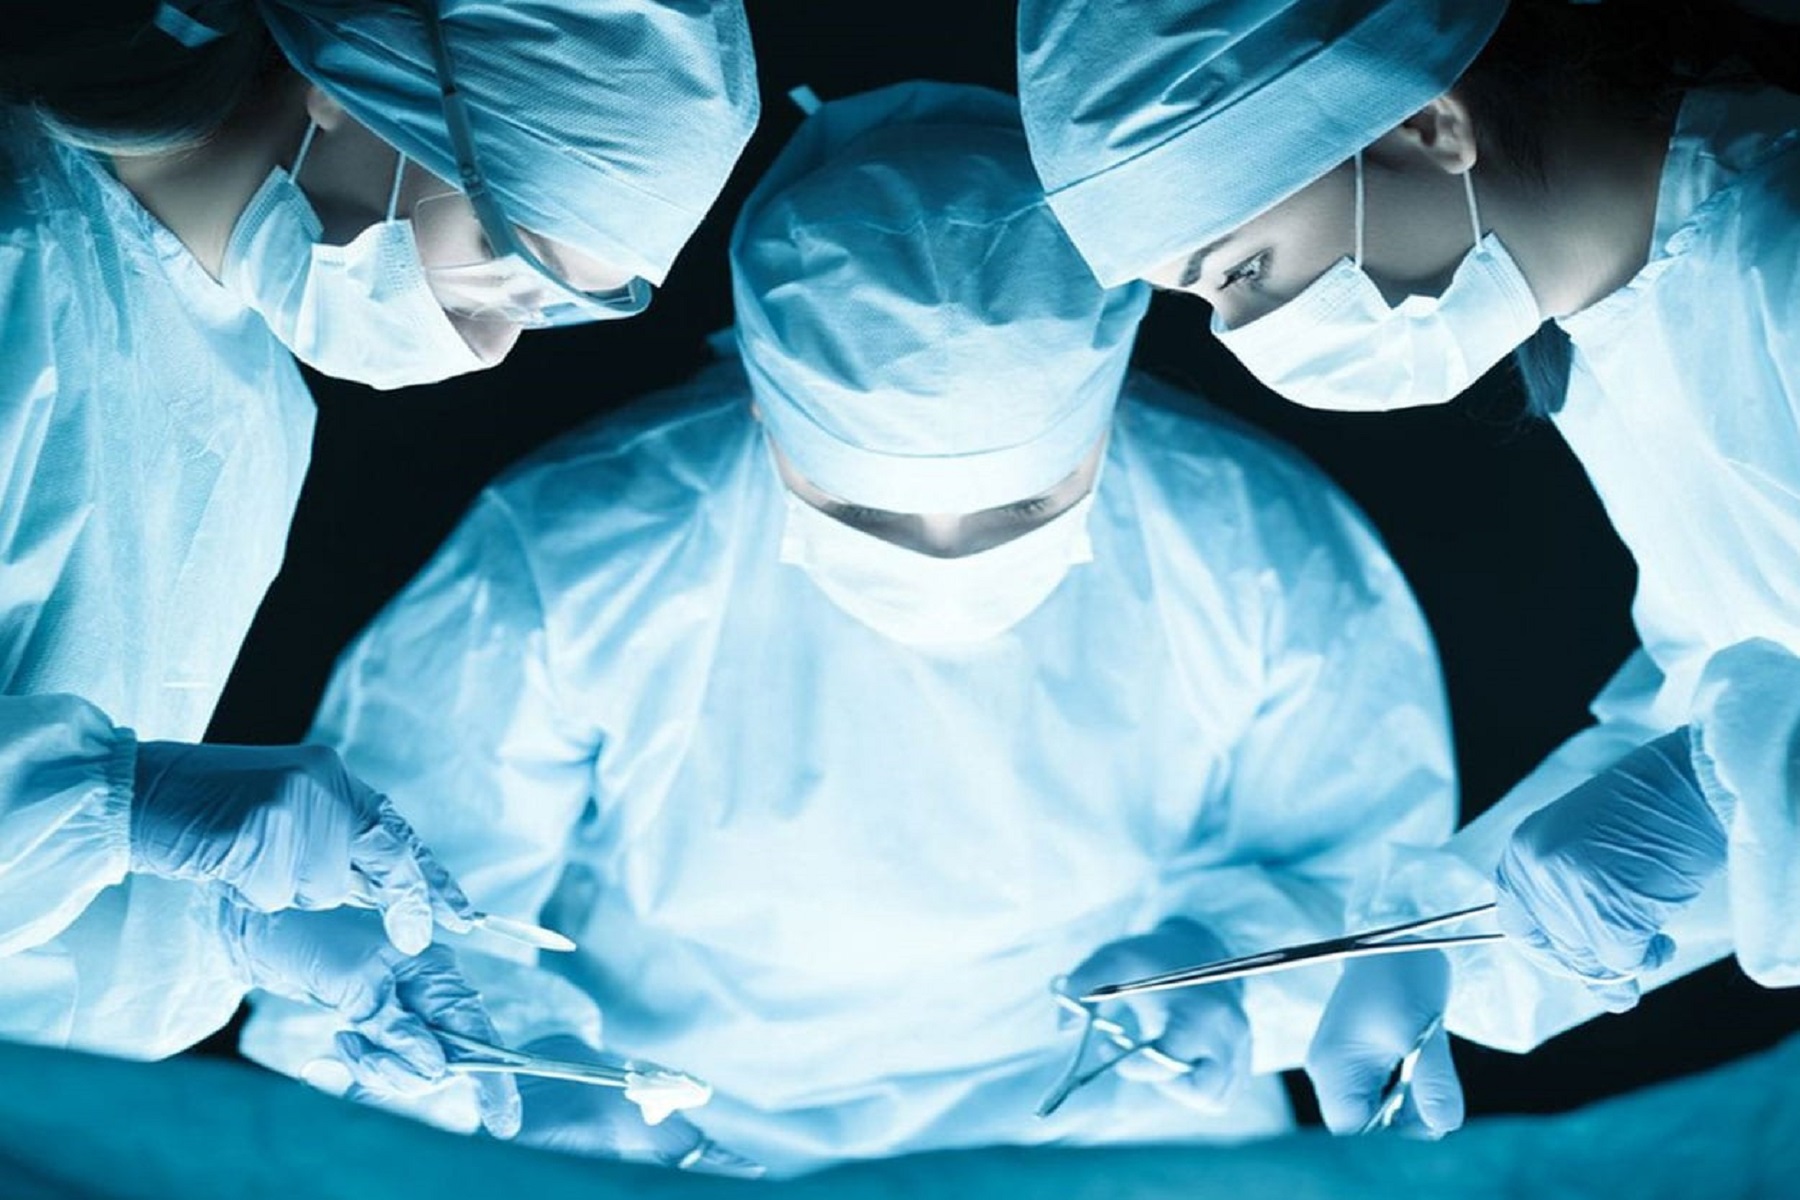 Κρήτη Ιατρικό Λάθος: Ξεχάστηκαν 15 γάζες στο σώμα γυναίκας σε επέμβαση ολικής υστερεκτομής